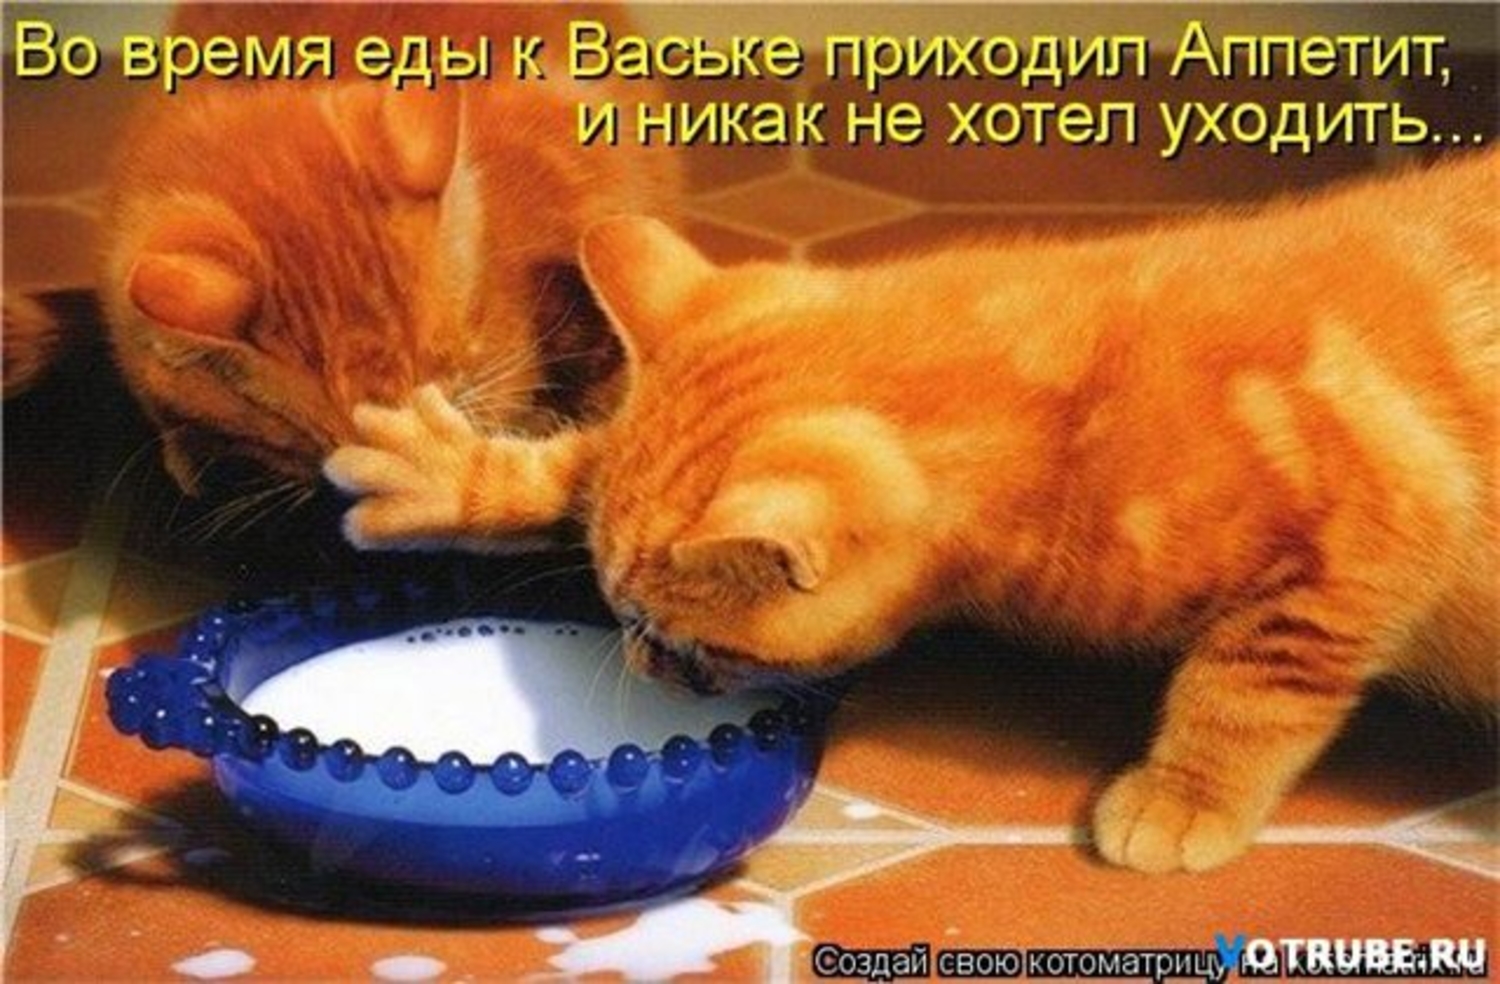 Ушли голодными. Кот хочет есть. Жадные коты. Миска для кота. Рыжий кот кушает.